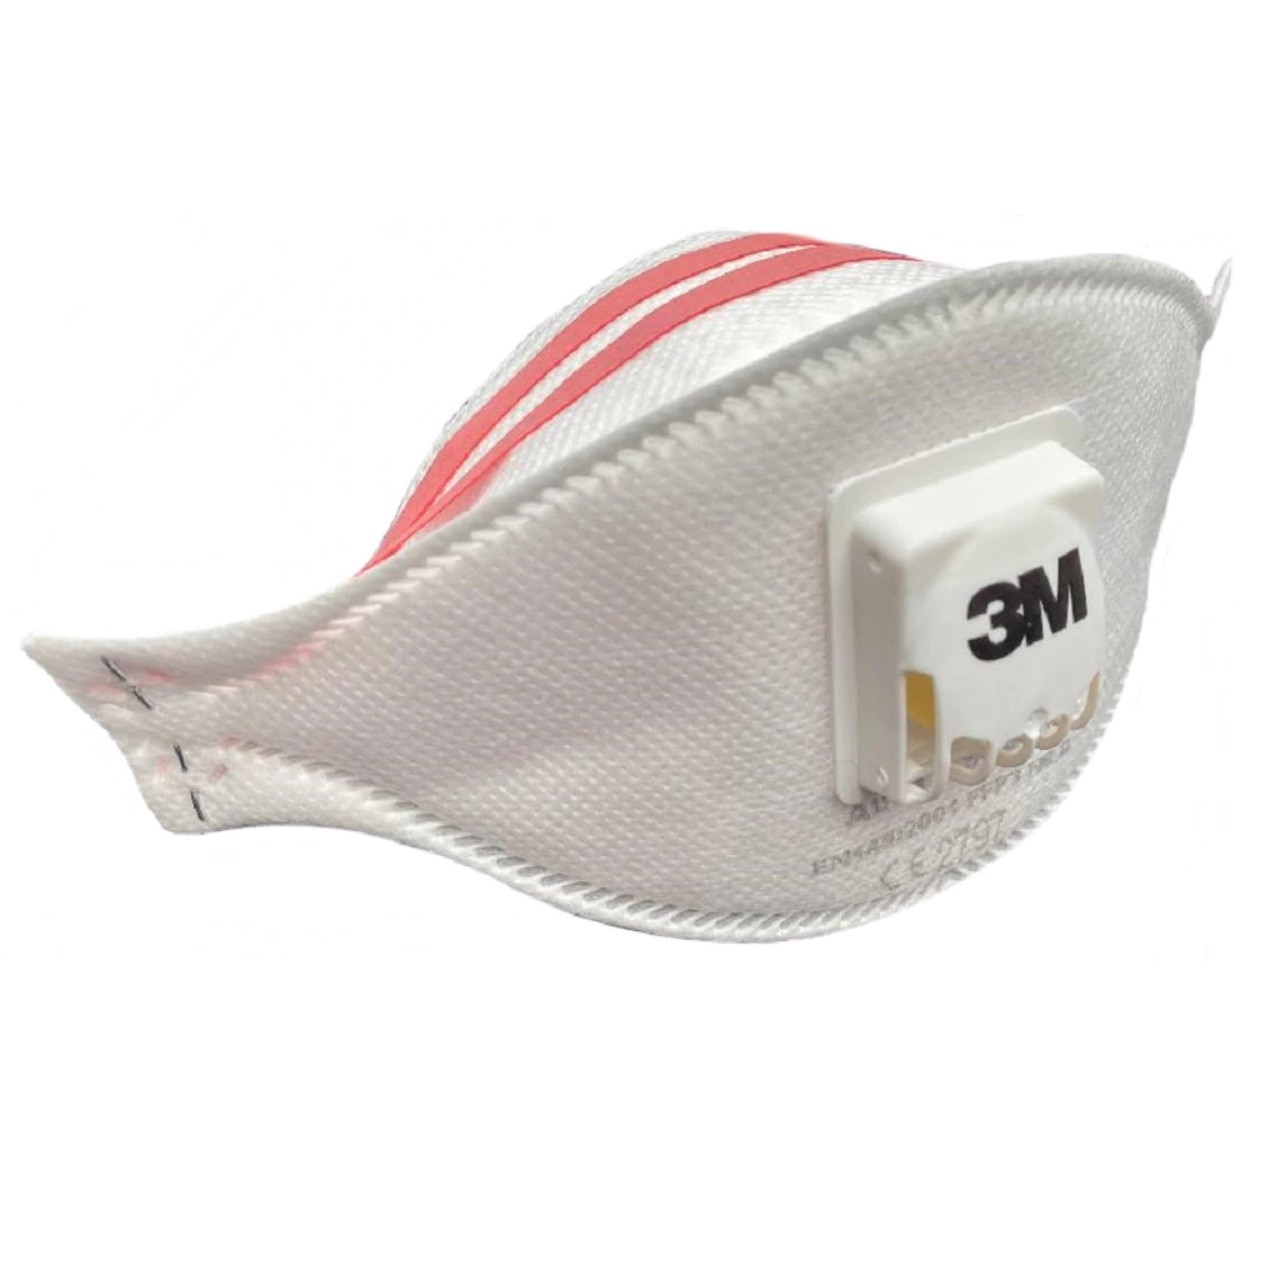 3M + masca de protectie FFP3 cu supapa/valva